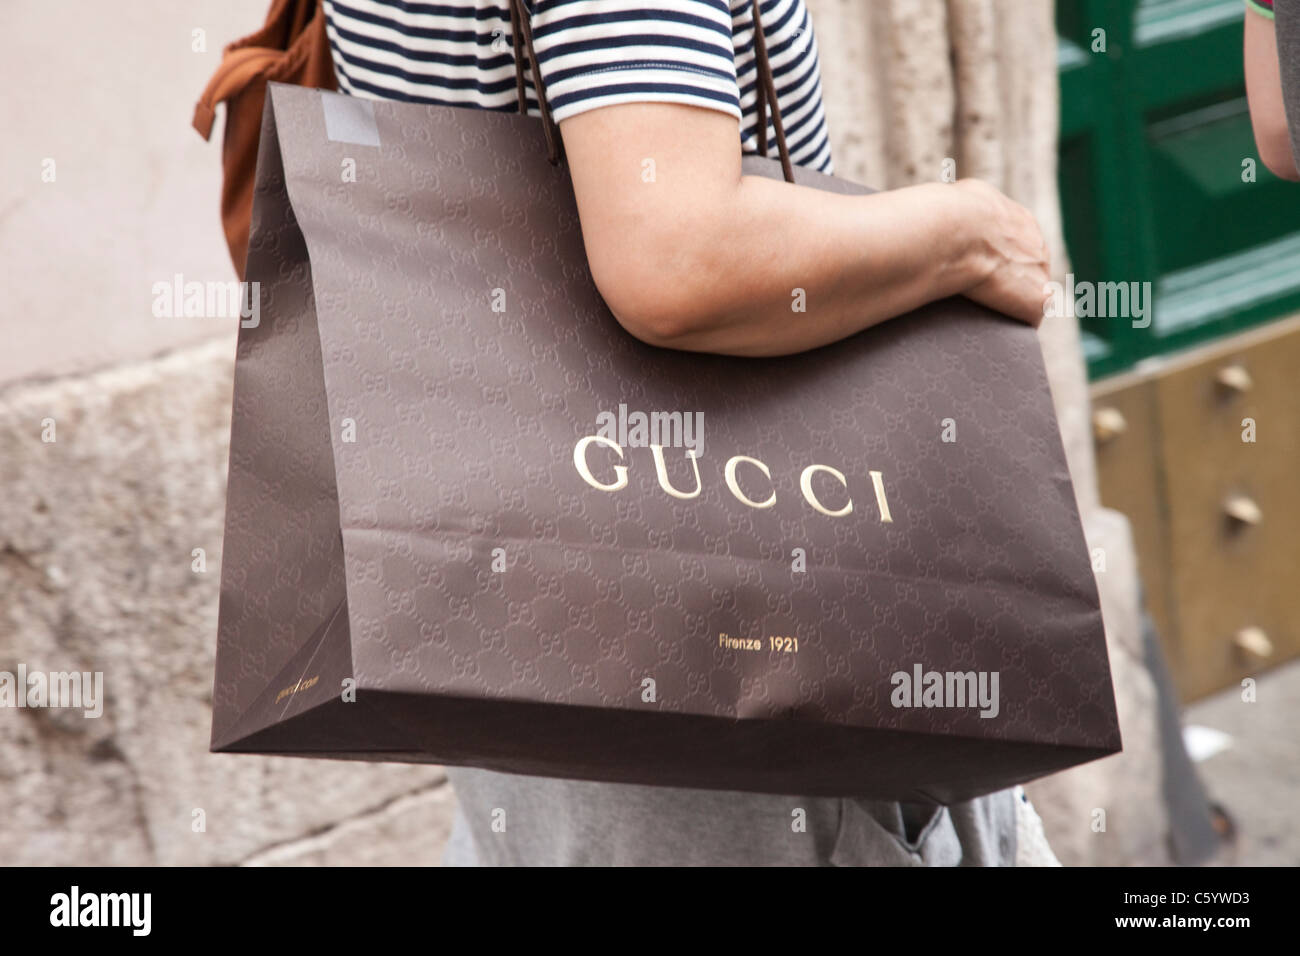 Gucci shopping bag immagini e fotografie stock ad alta risoluzione - Alamy